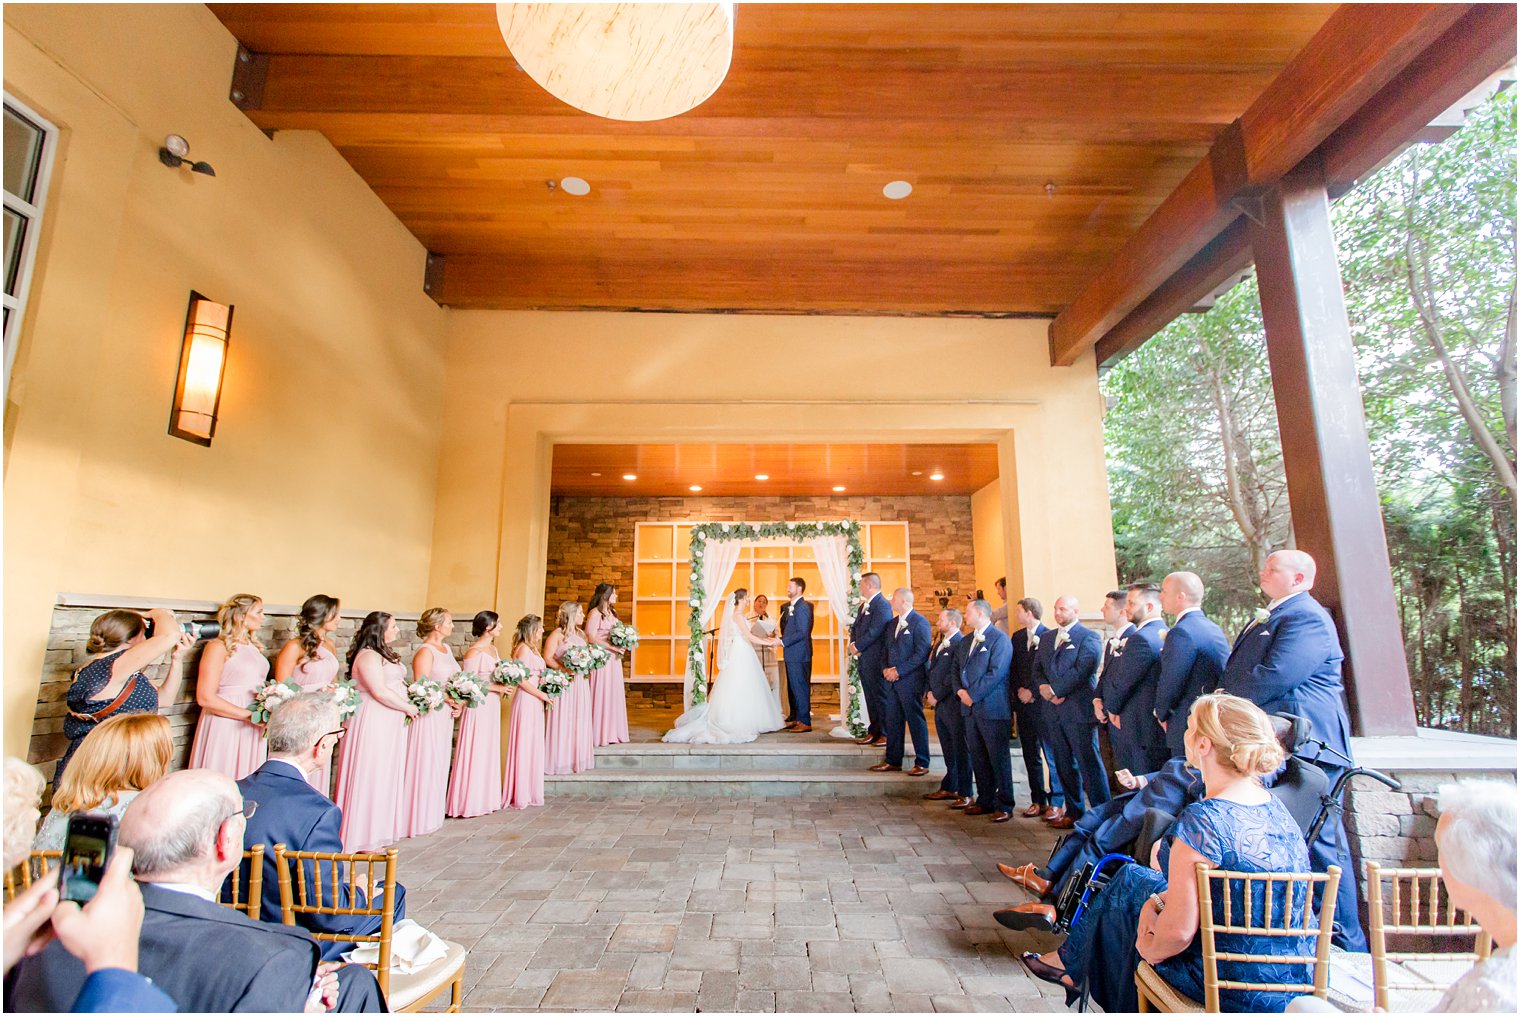 Wedding ceremony at Stone House at Stirling Ridge Wedding Photos by NJ Wedding Photographers Idalia Photography